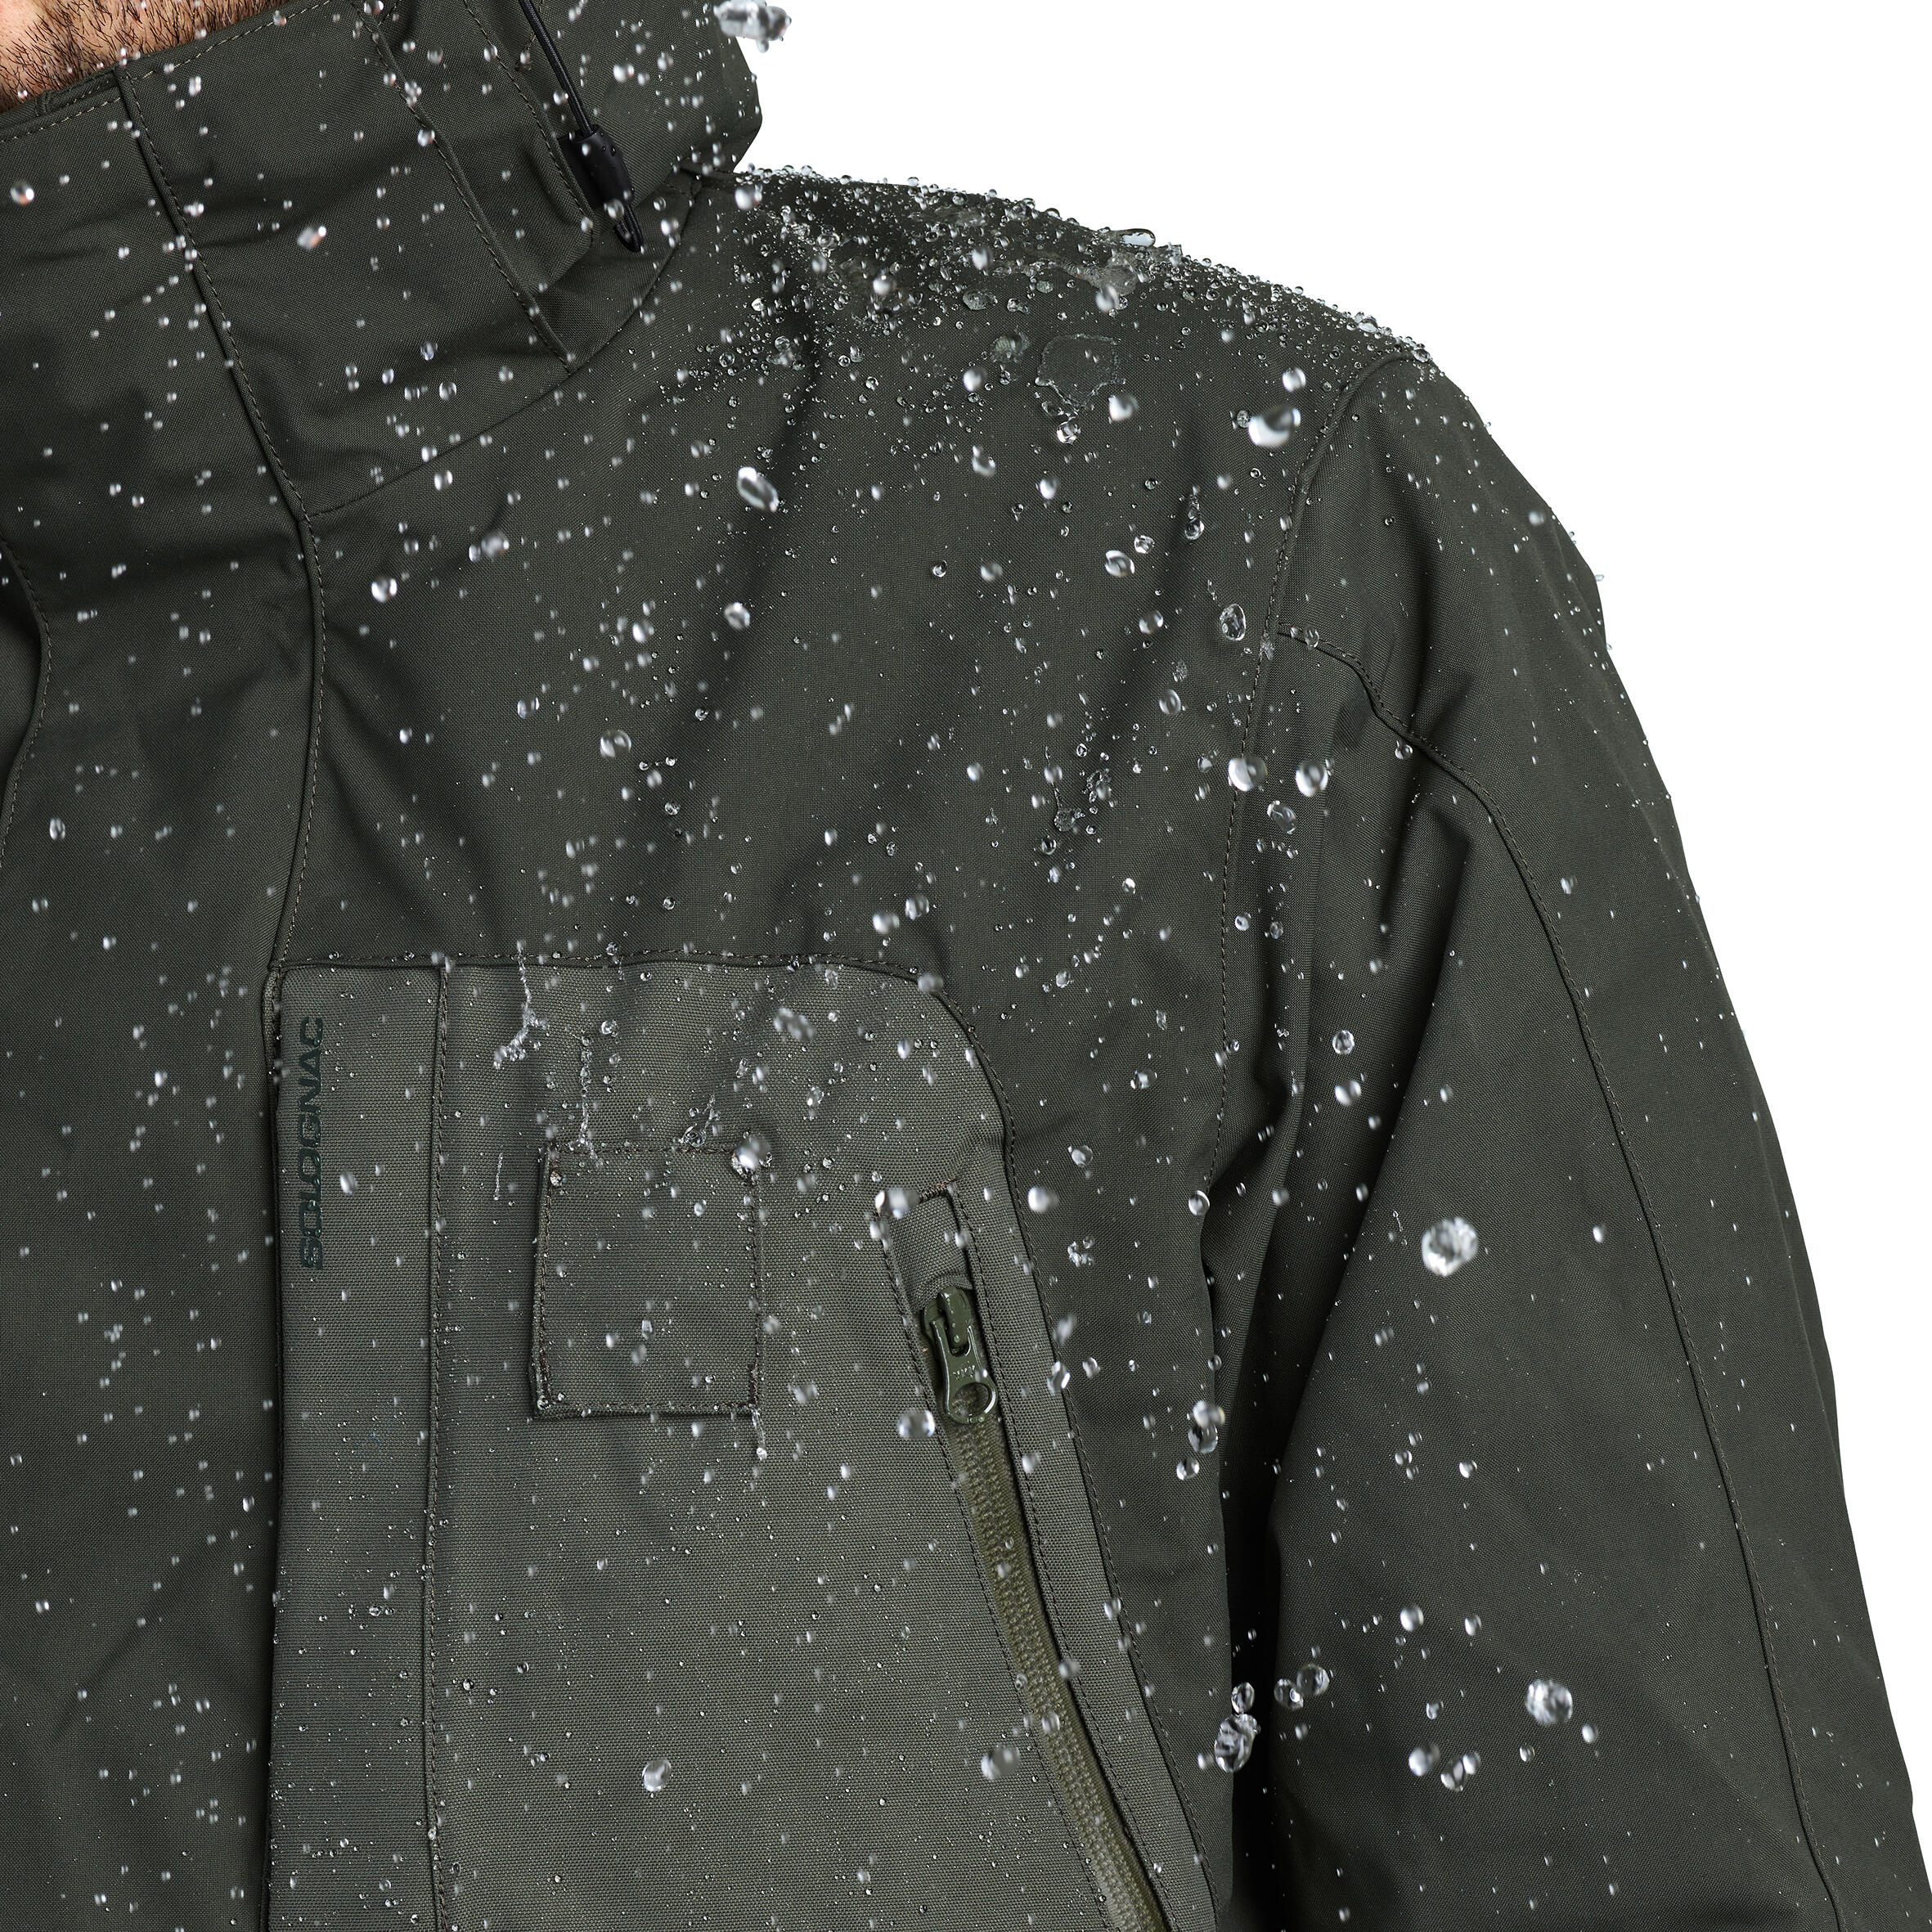 Waterproof hunting jacket Renfort 540 - green 4/9